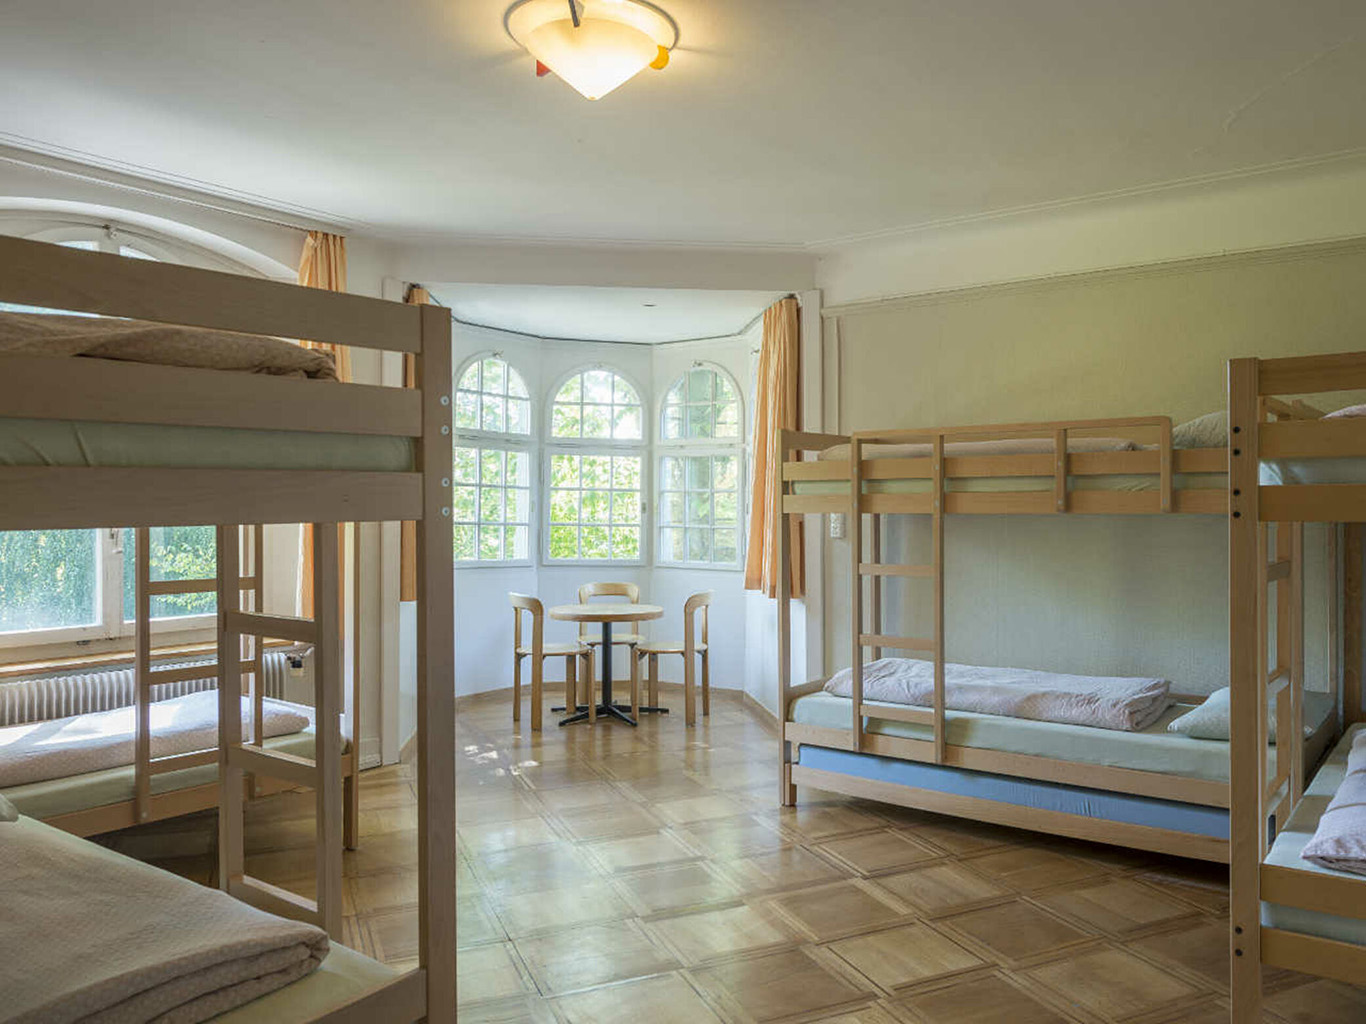 Švýcarské hostely nabízí cenově dostupné ubytování